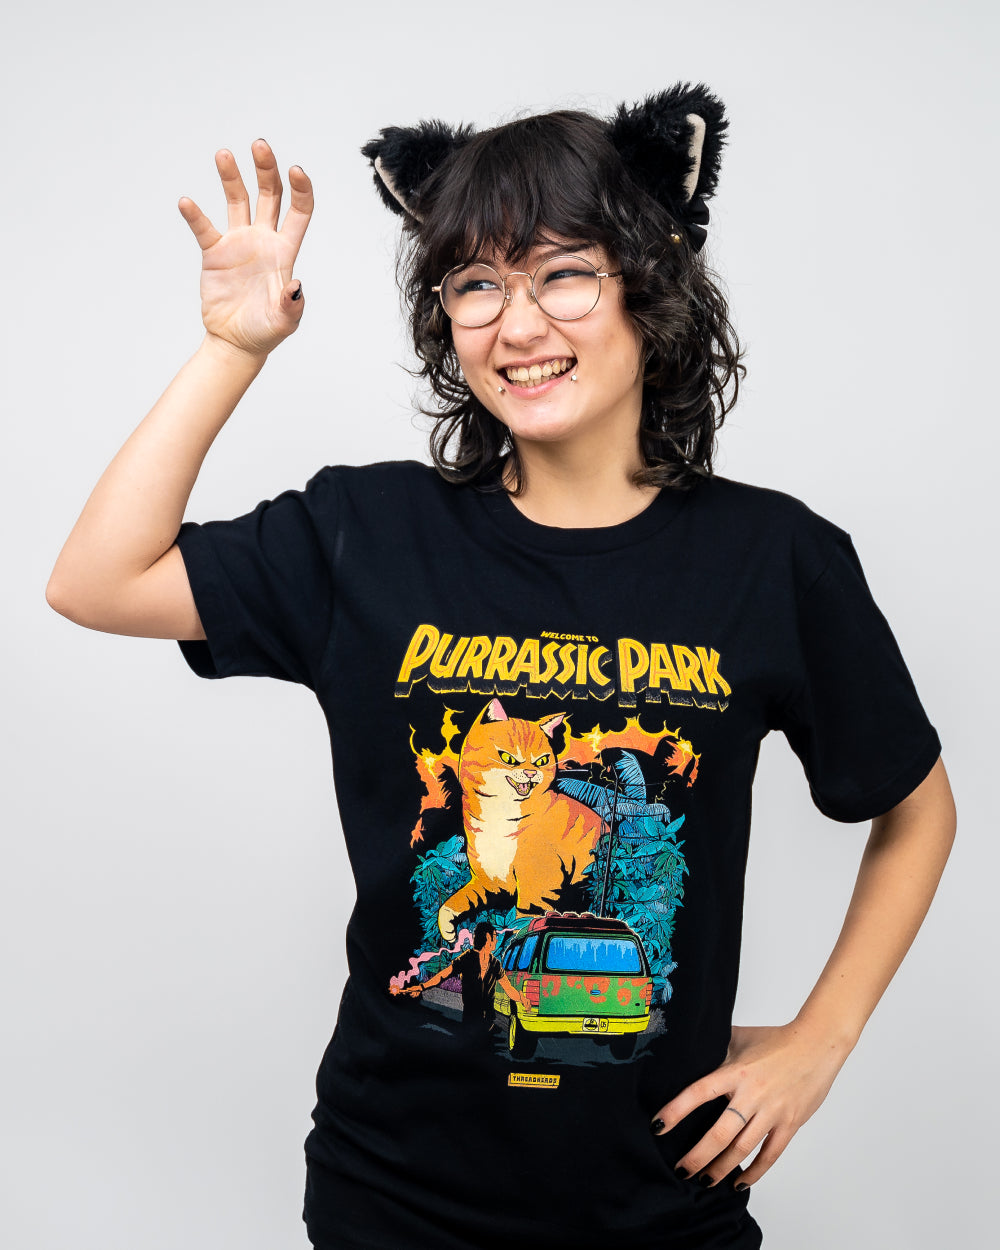 Purrassic Park T-Shirt Australia Online #colour_black